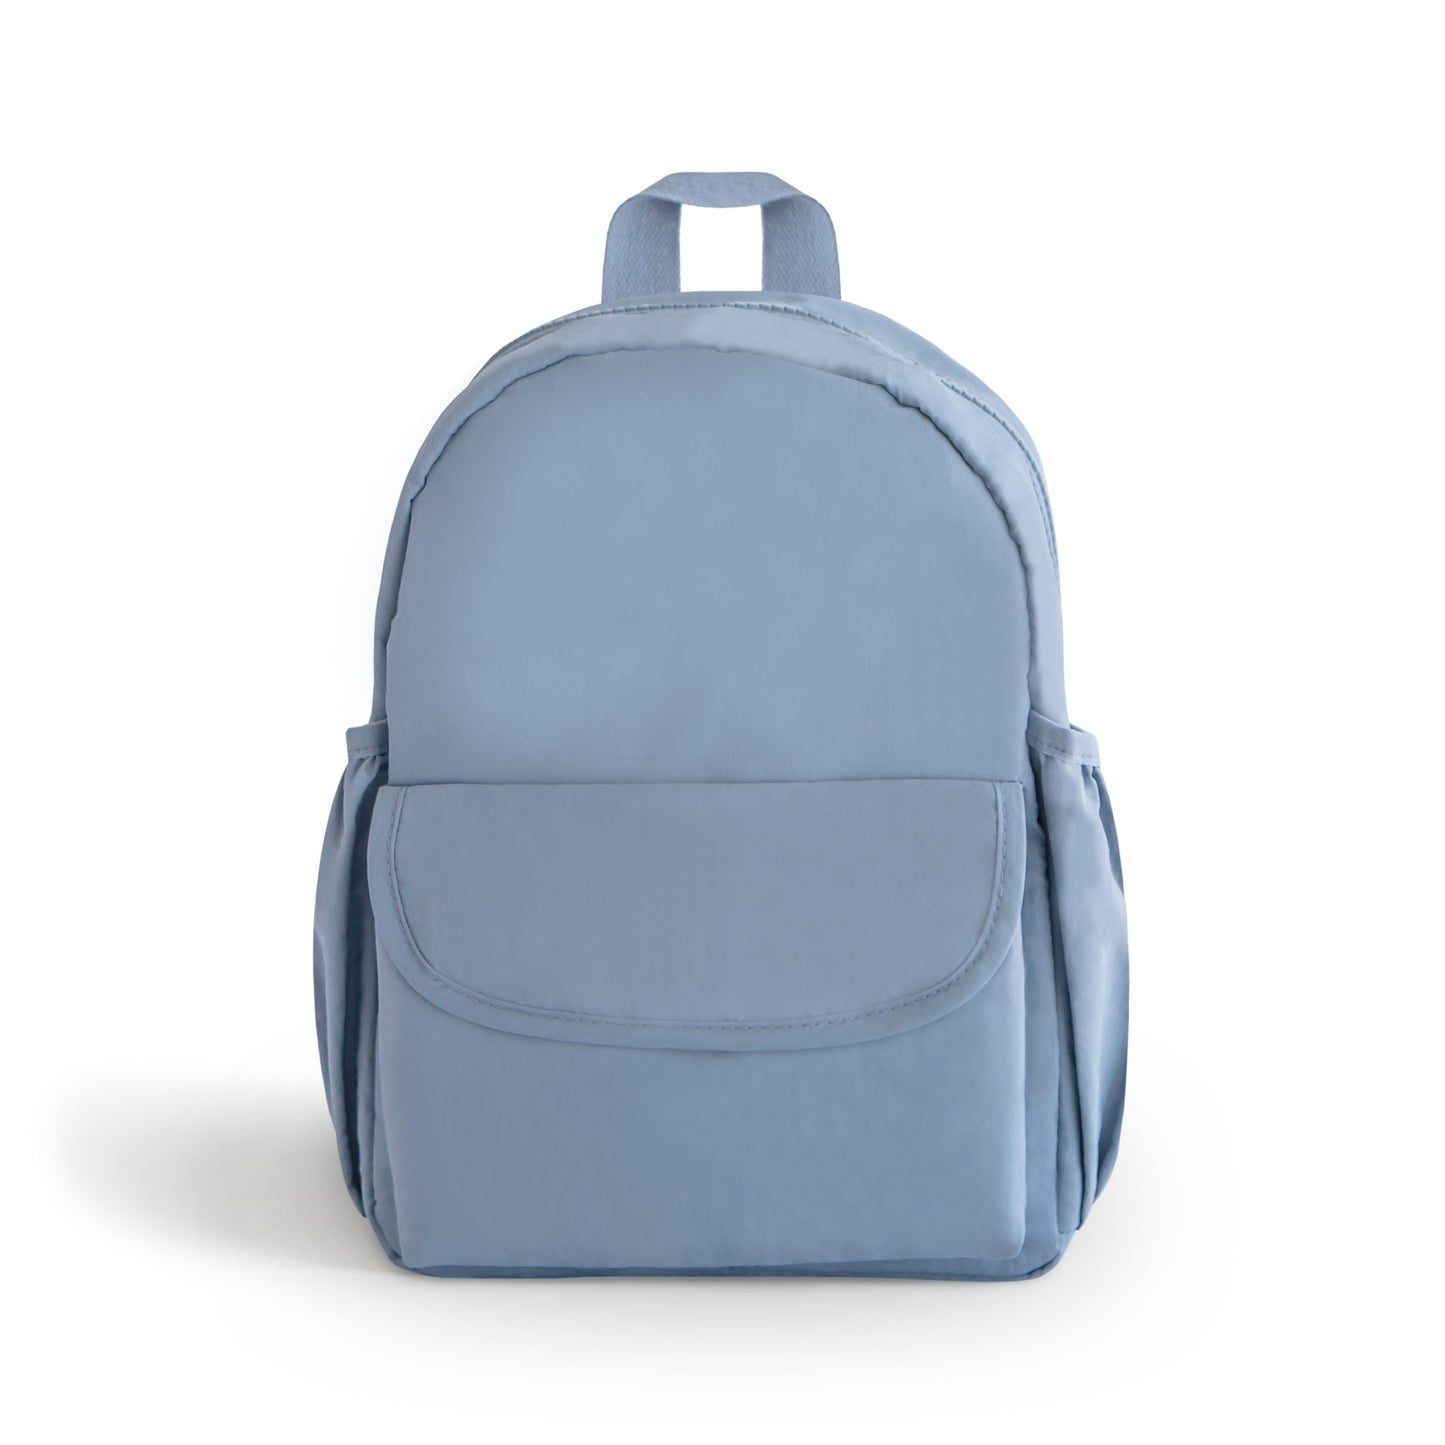 💗 NEW MUSHIE 💗 Kids Mini Backpack